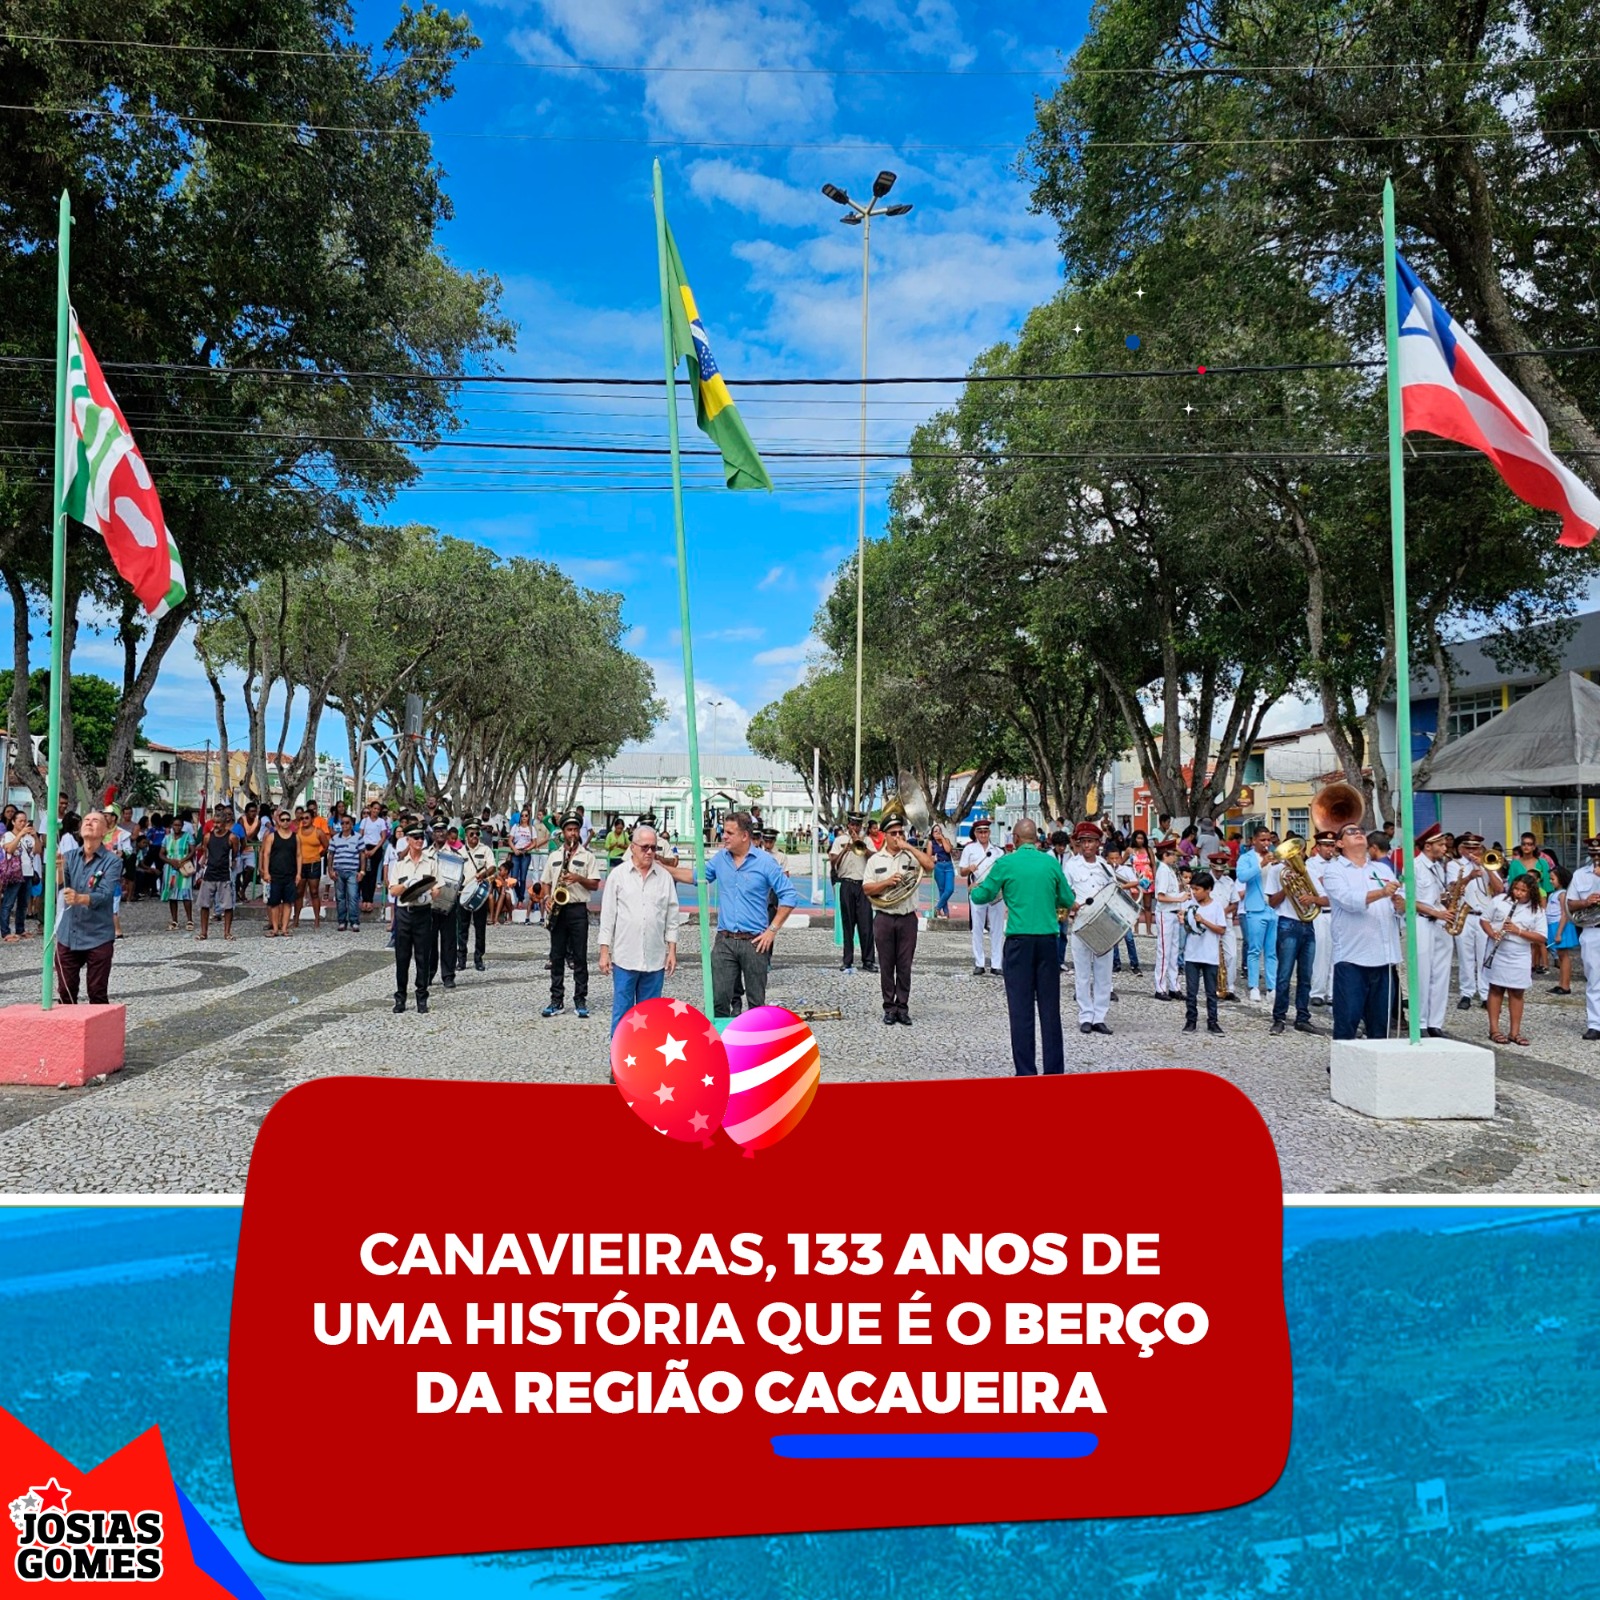 Canavieiras, Cidade Berço Da Região Cacaueira. 133 Anos De Glórias